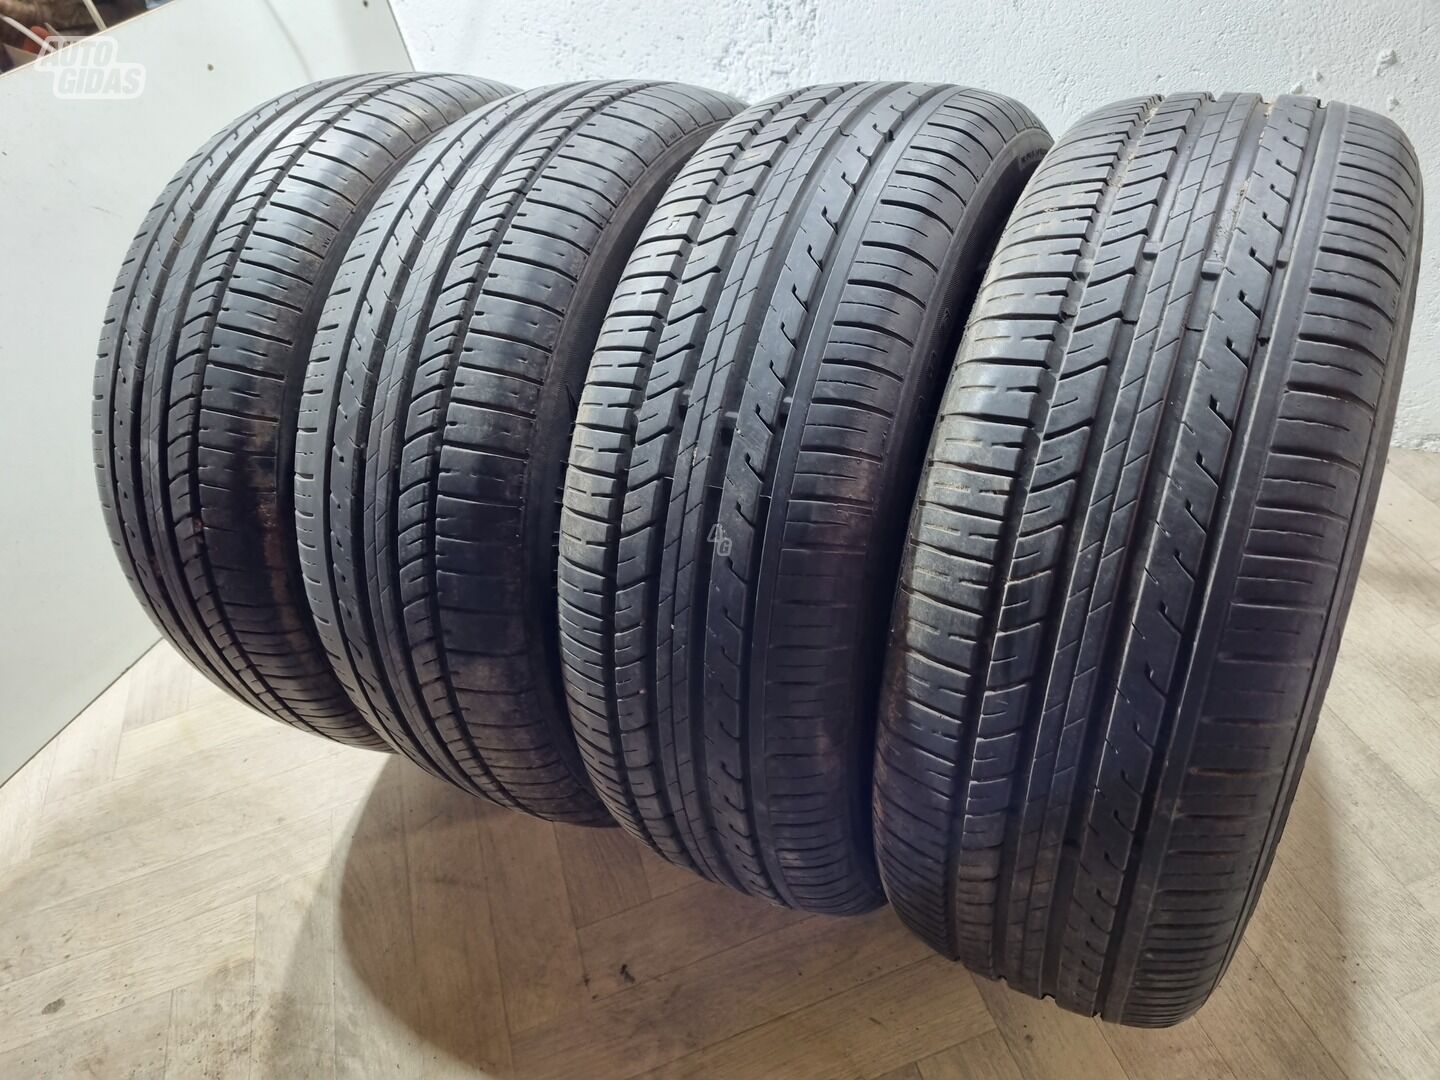 Zeetex 6-7mm, 2019m R16 summer tyres passanger car